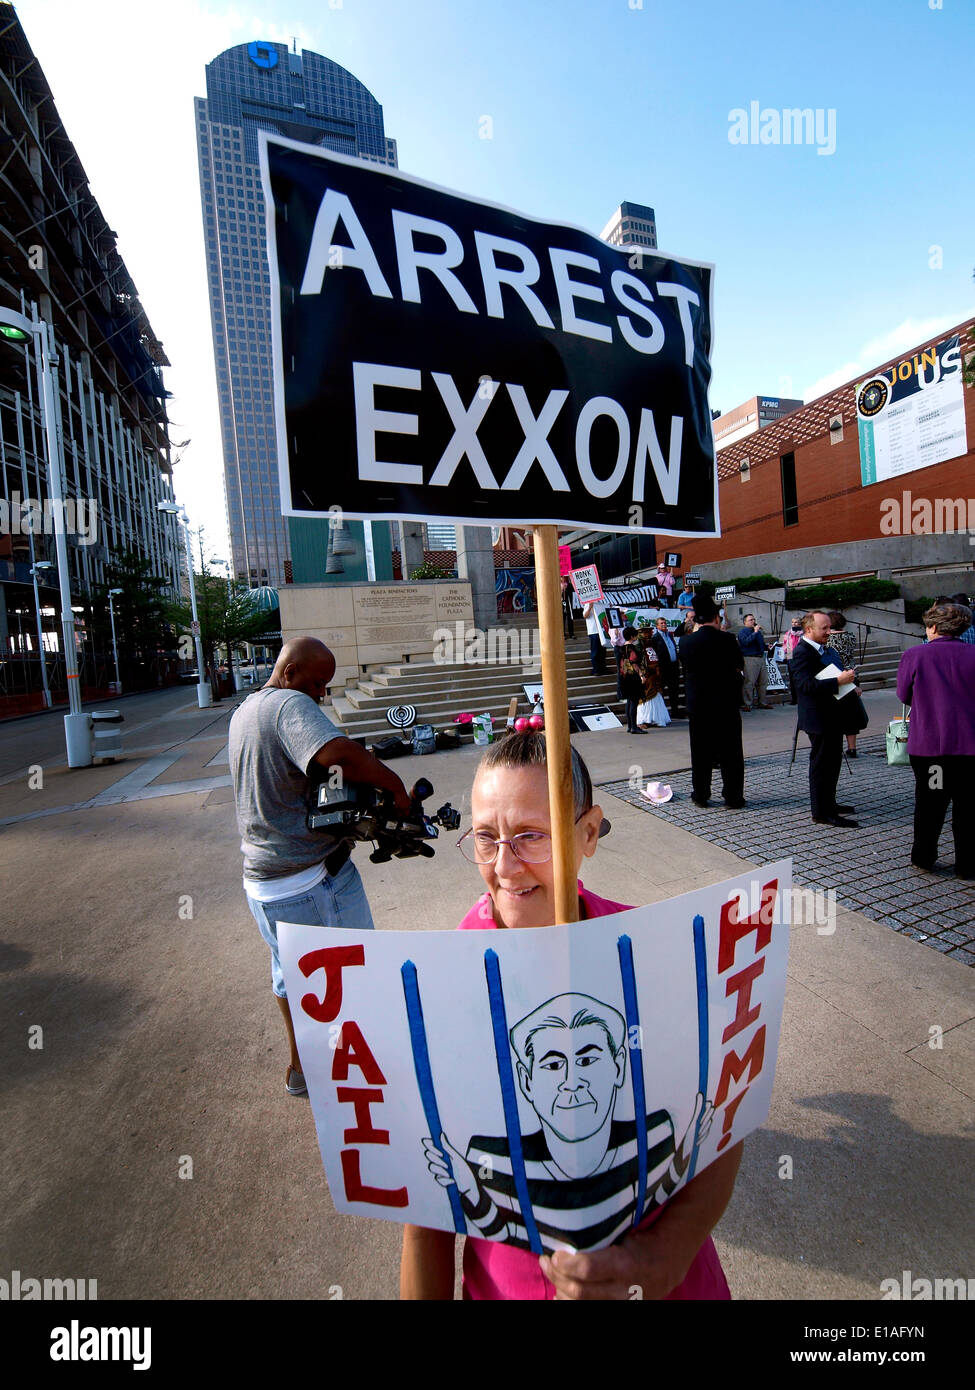 Dallas, Texas - 28 mai 2014 -manifestant devant le Morton Meyerson Symphony Hall accueille les actionnaires de venir à Exxon Mobil's assemblée annuelle des actionnaires. Banque D'Images